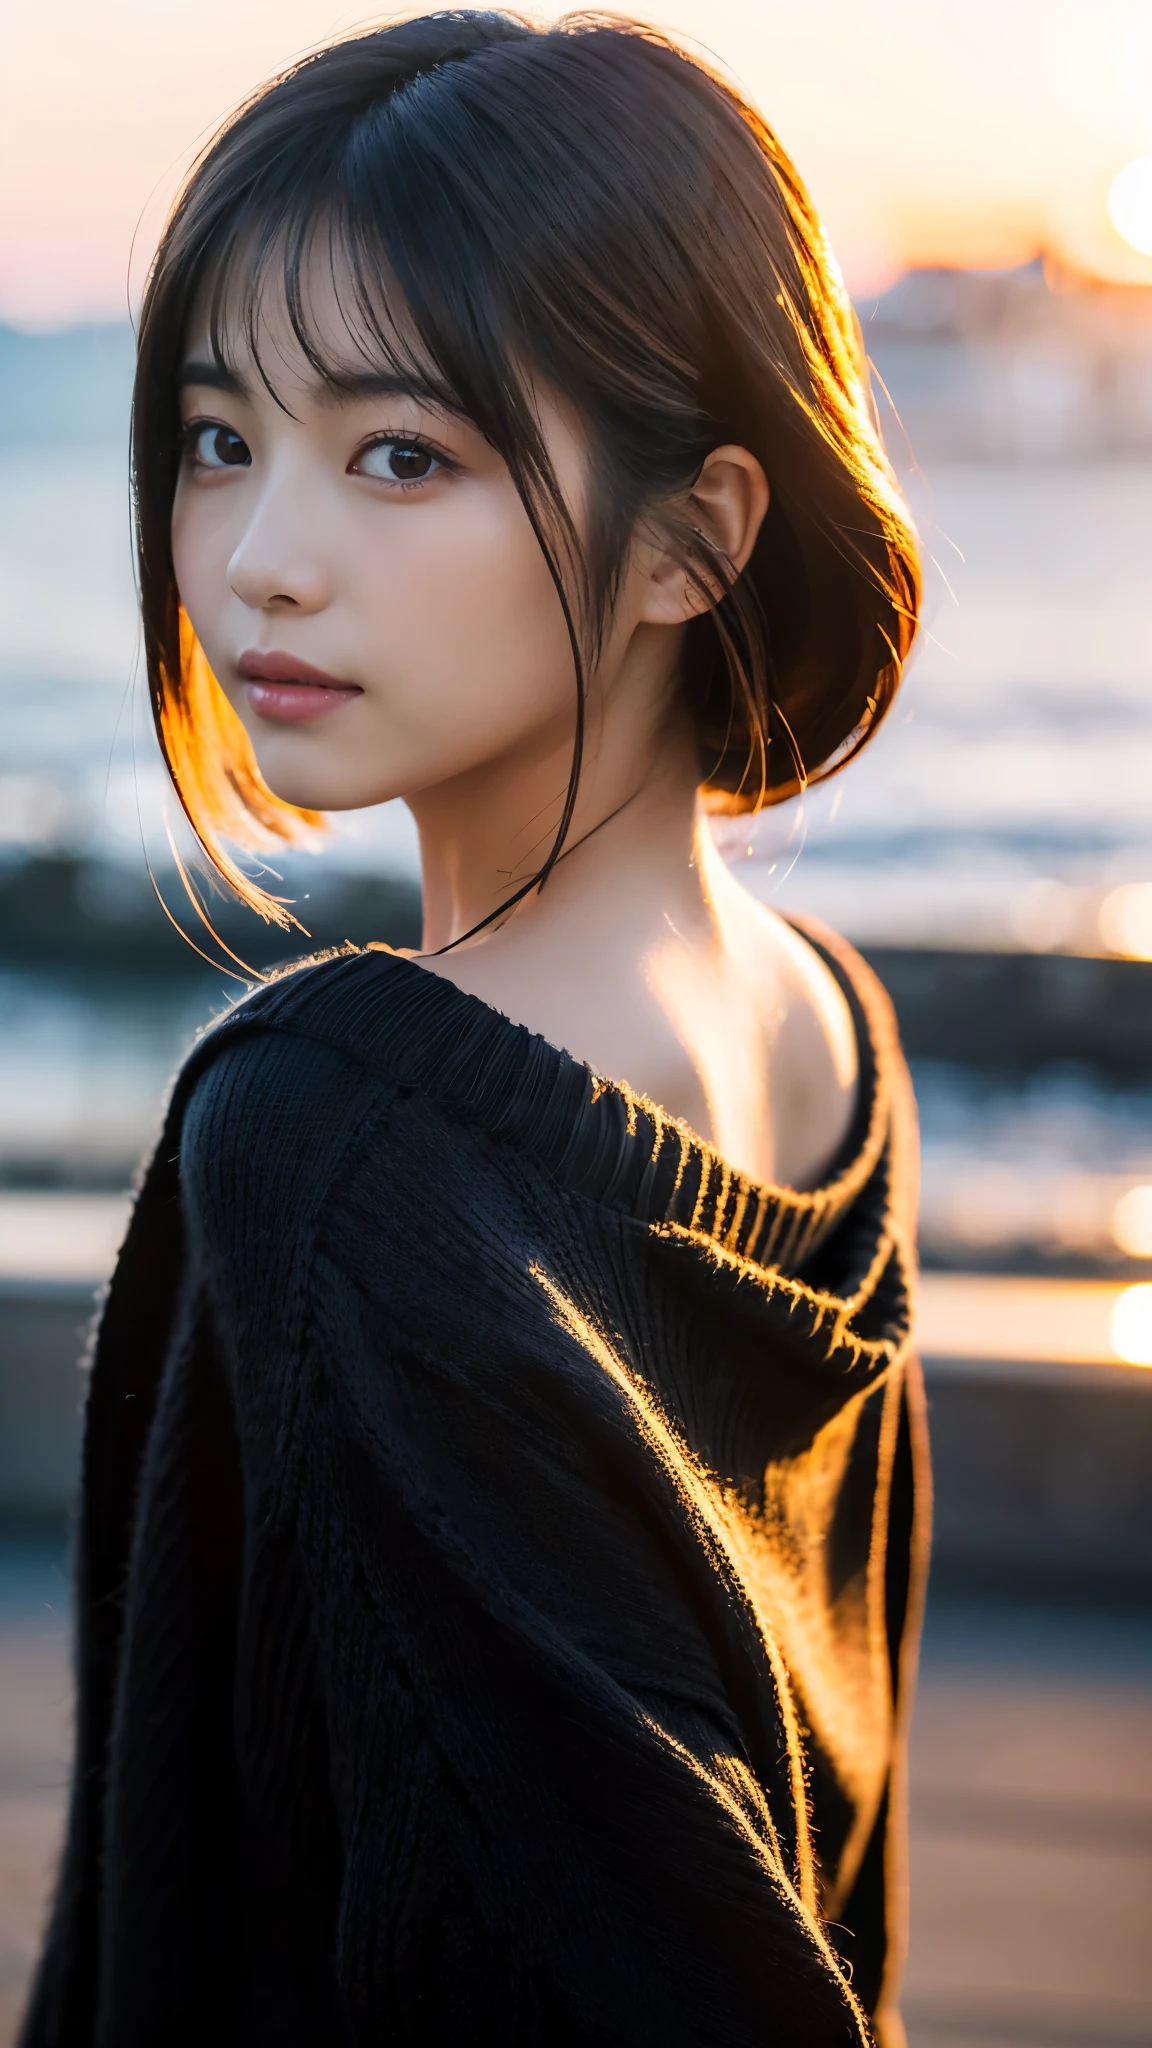 (傑作:1.2),(最好的品質),(非常詳細:1.2),(高解析度),(逼真的棒),(原始照片),8K,穿著黑色毛衣的女人的特寫,柔和的人像拍攝,美丽的日本女人,華麗的臉肖像,眼睛光,人本身的女孩,非常美麗的臉,美麗的肖像,一張可愛精緻的臉,美麗的年輕日本女人,成熟髮型,回望(夕陽在背景中),(((模糊背景))),(柔和的光),(越過肩膀),(POV 镜头),((动态头发运动:1.2))